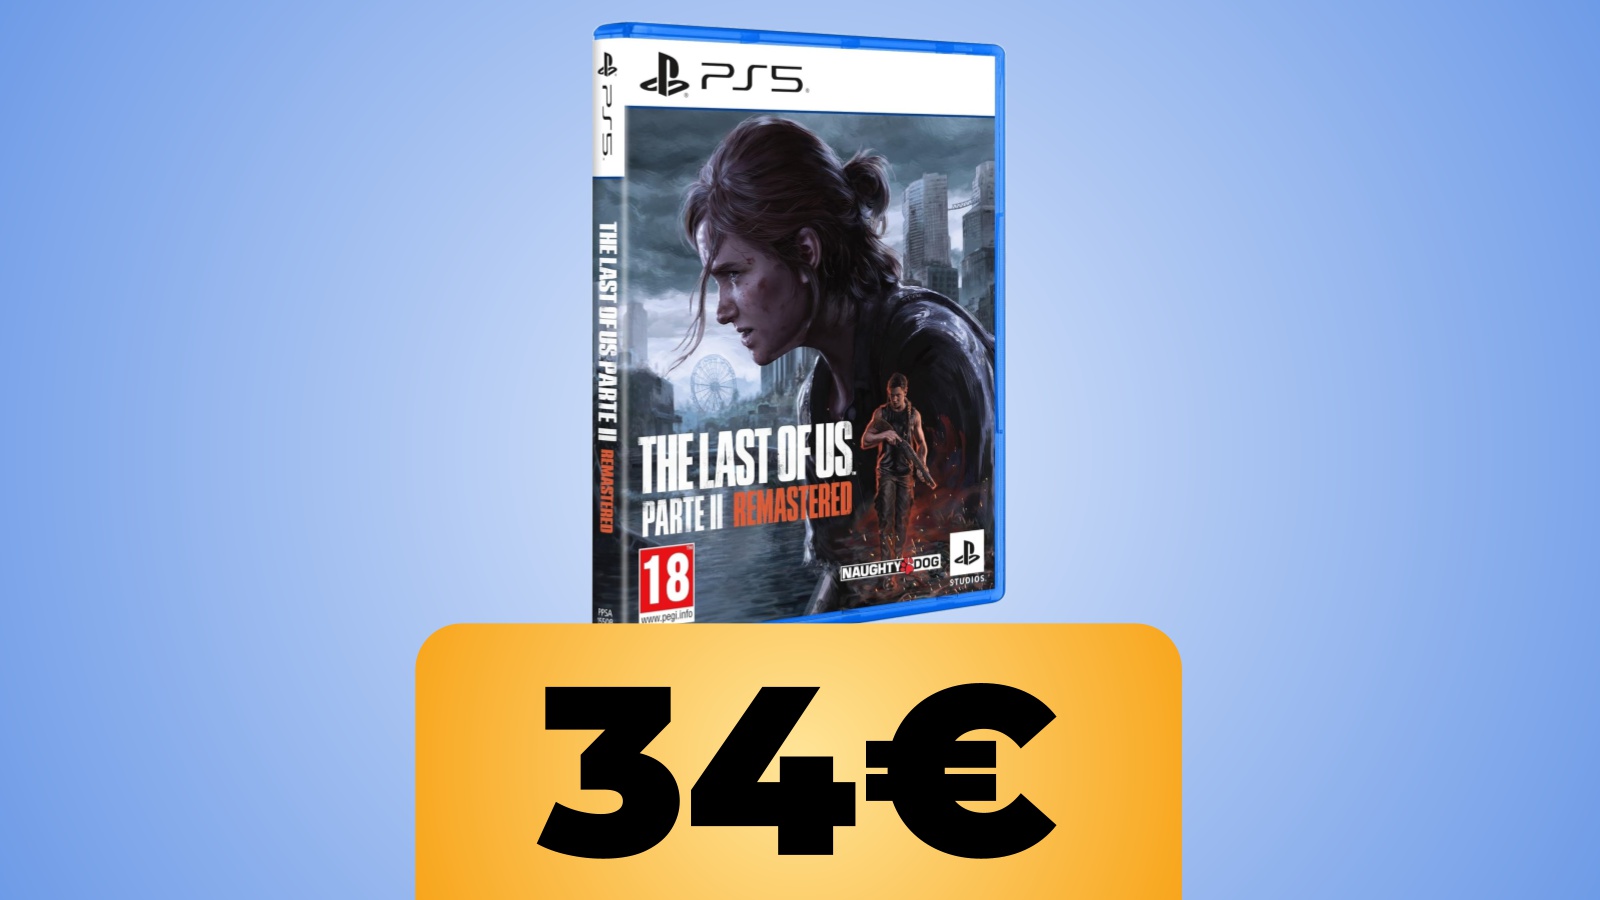 La confezione di The Last of Us Parte II Remastered con sotto il prezzo dell'offerta Amazon